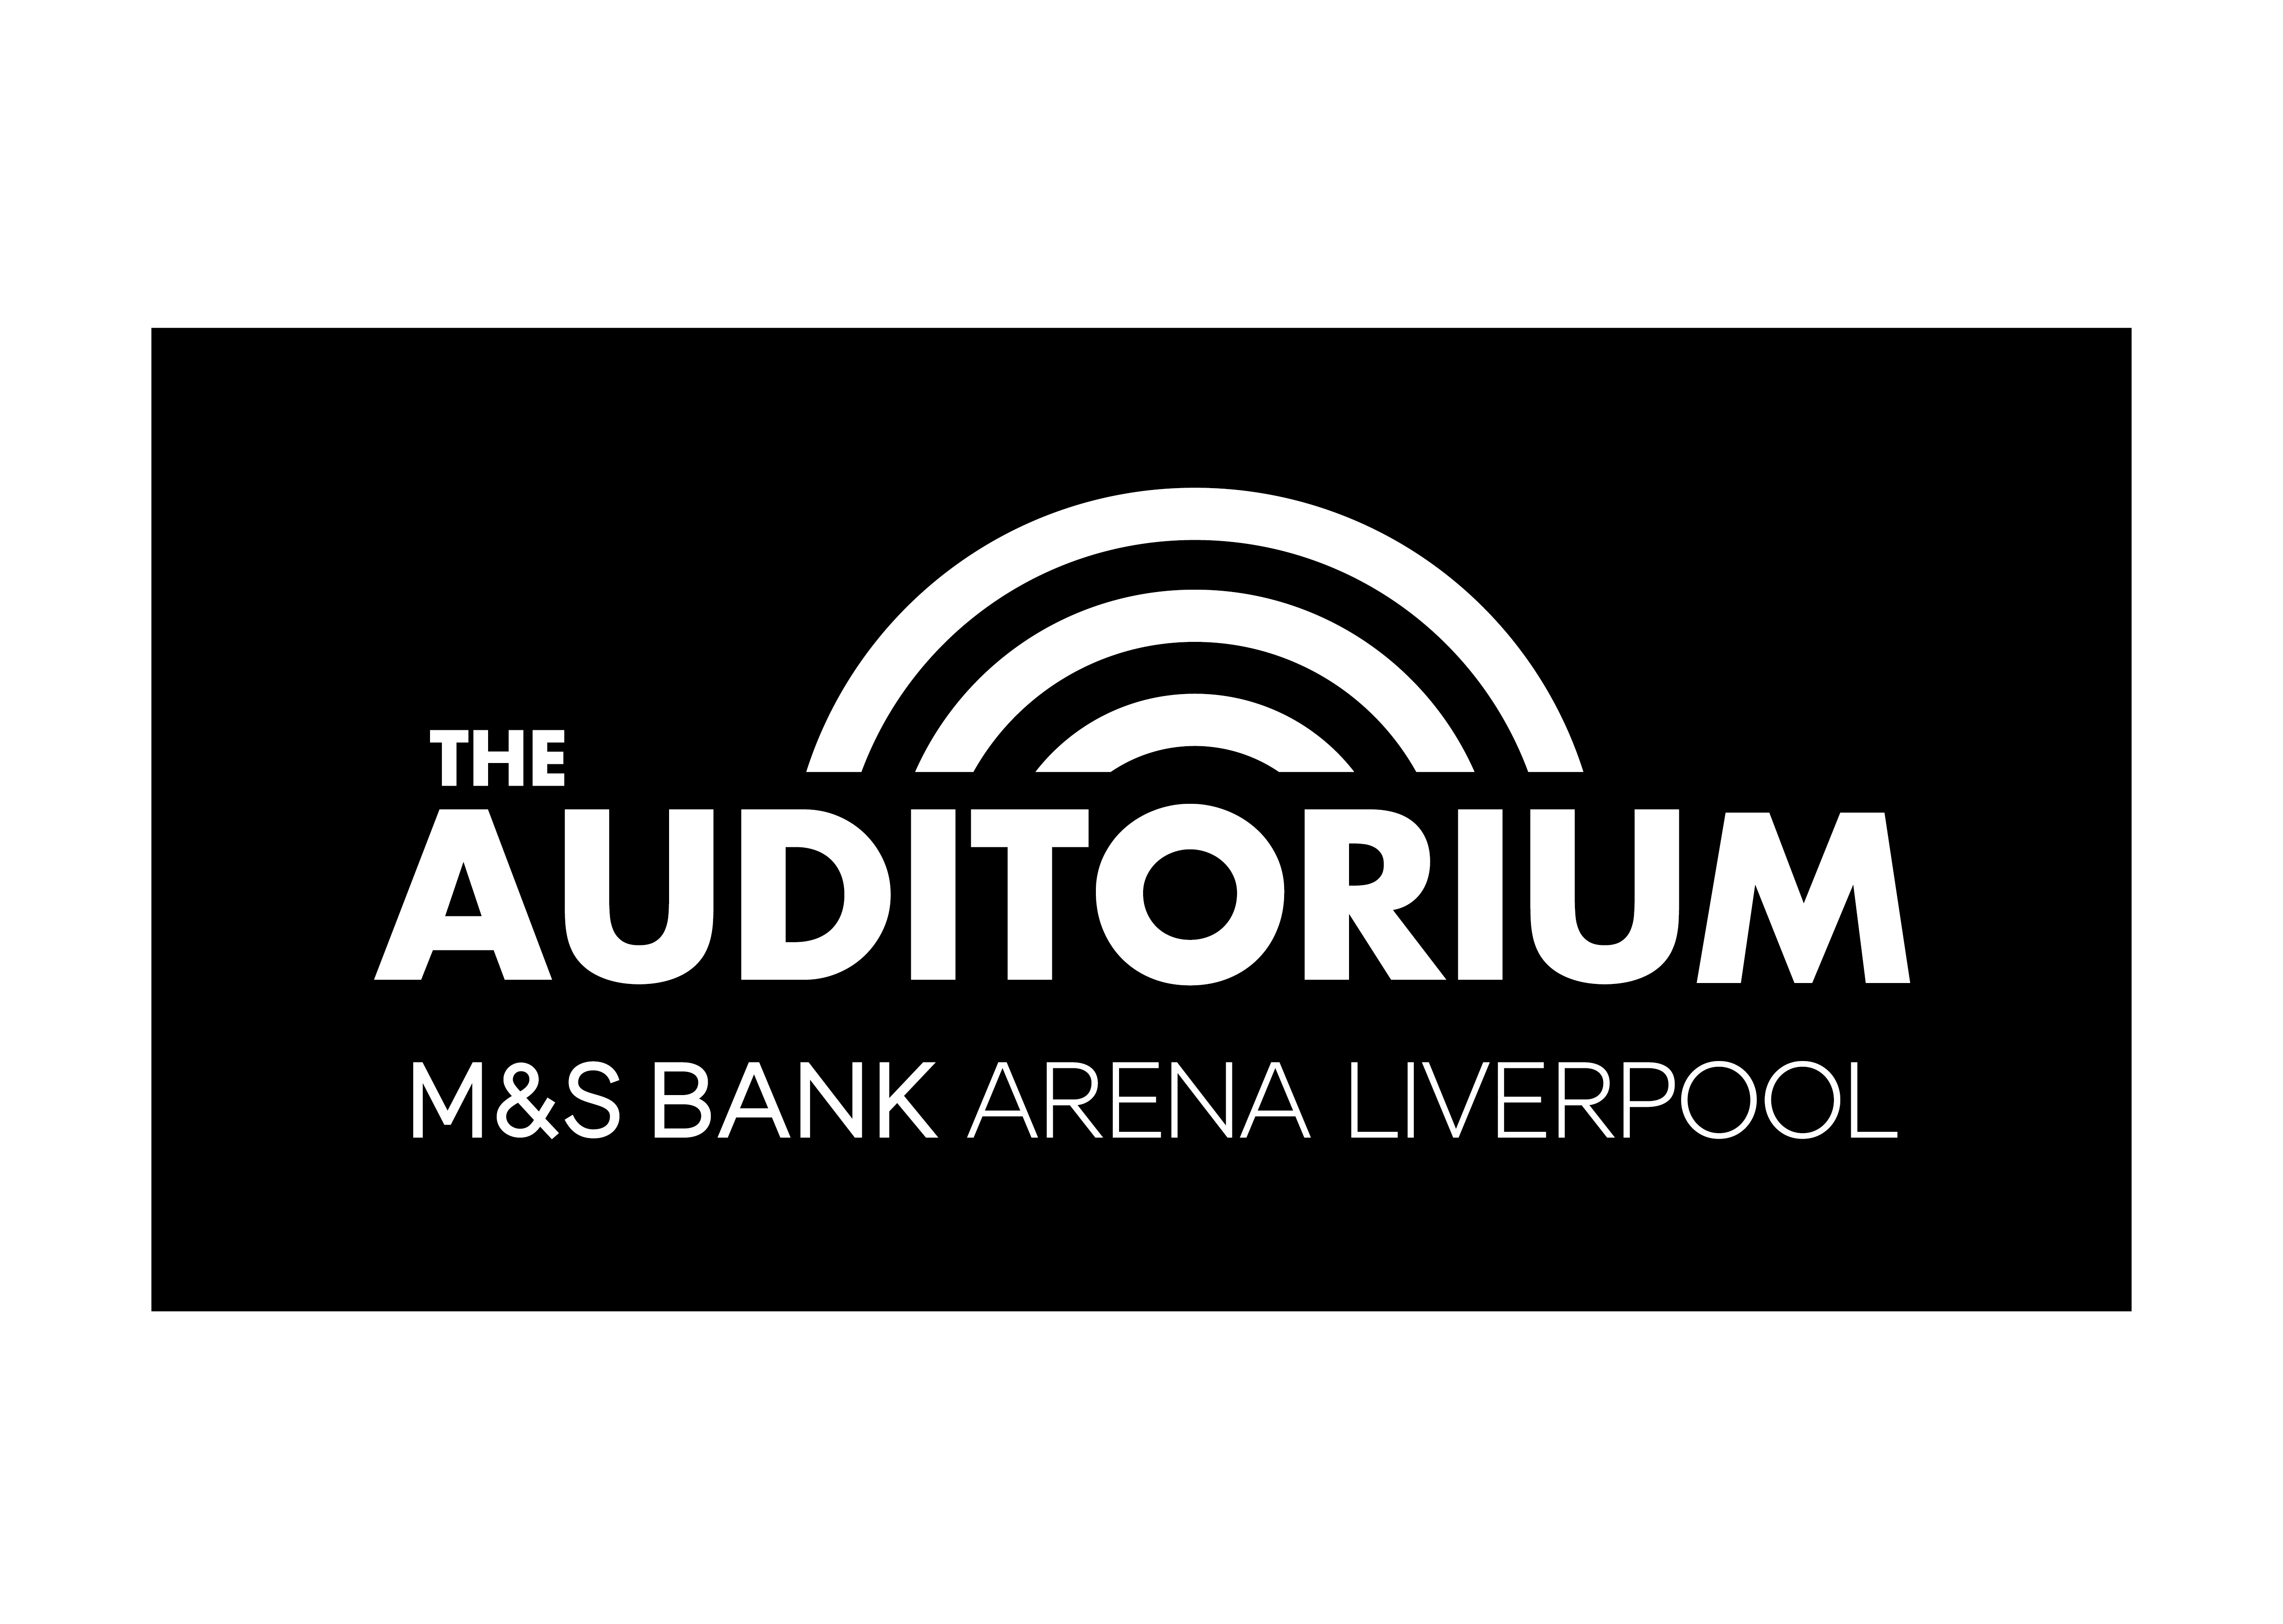 The Auditorium, M&S Bank Arena Liverpool